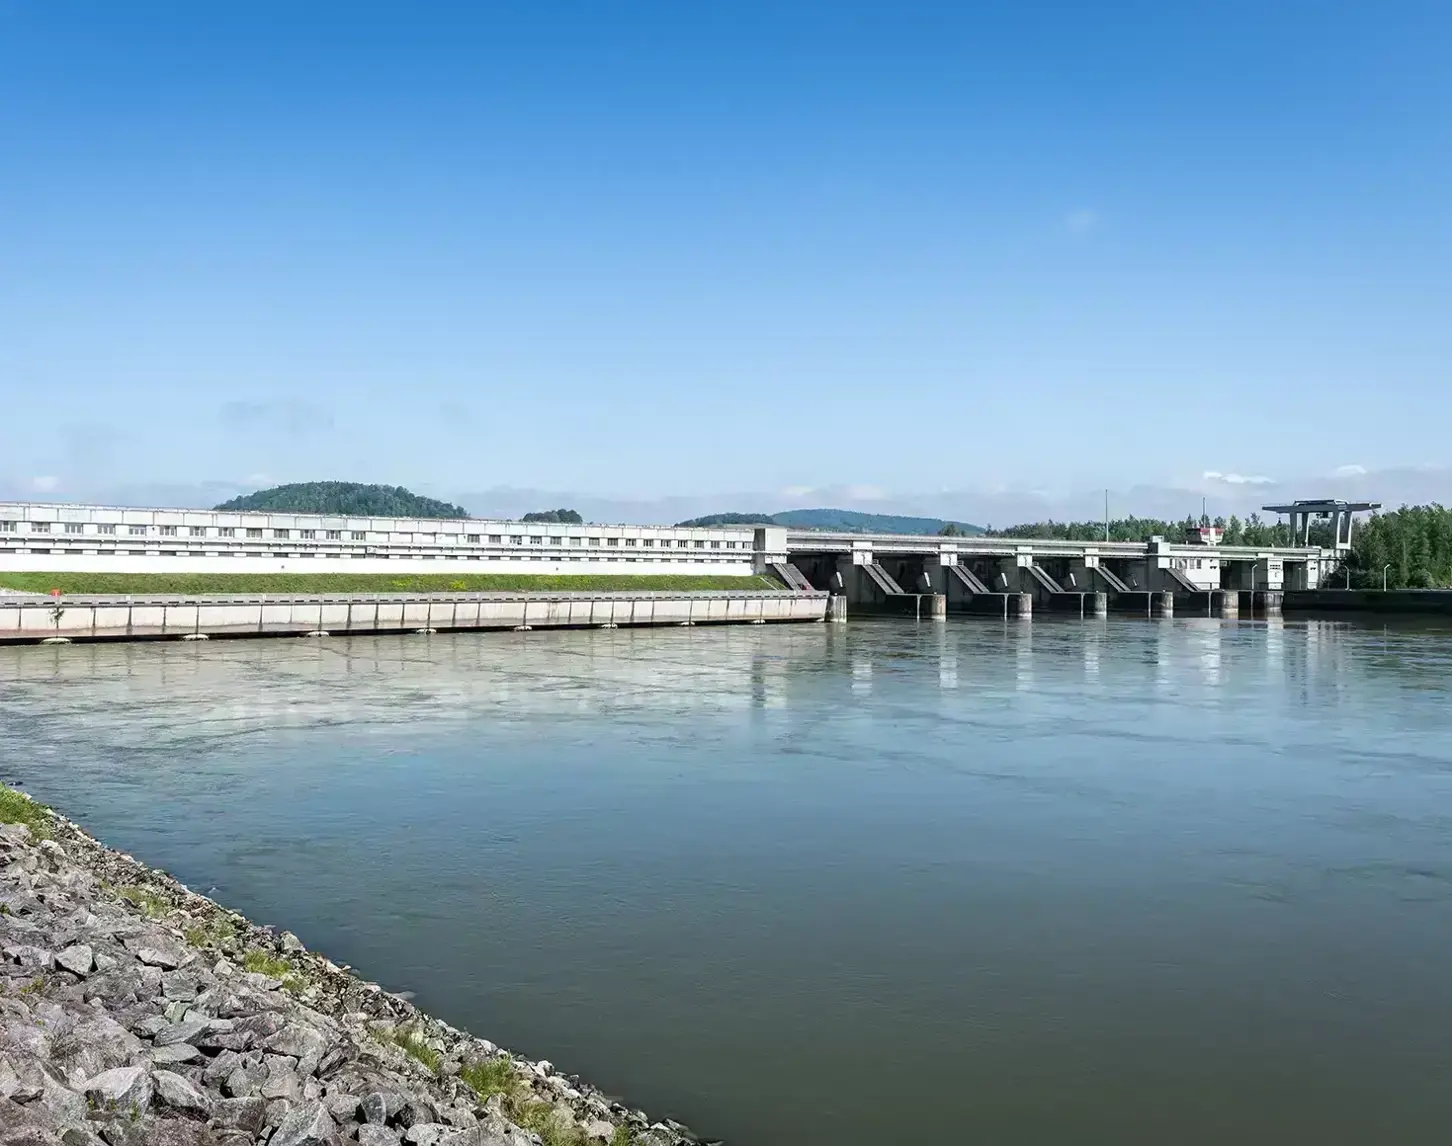 Blick auf das Kraftwerk Abwinden Asten. Links sieht man einen Teil der Uferbegrenzung. Der blaue Himmel spiegelt sich in der Donau.